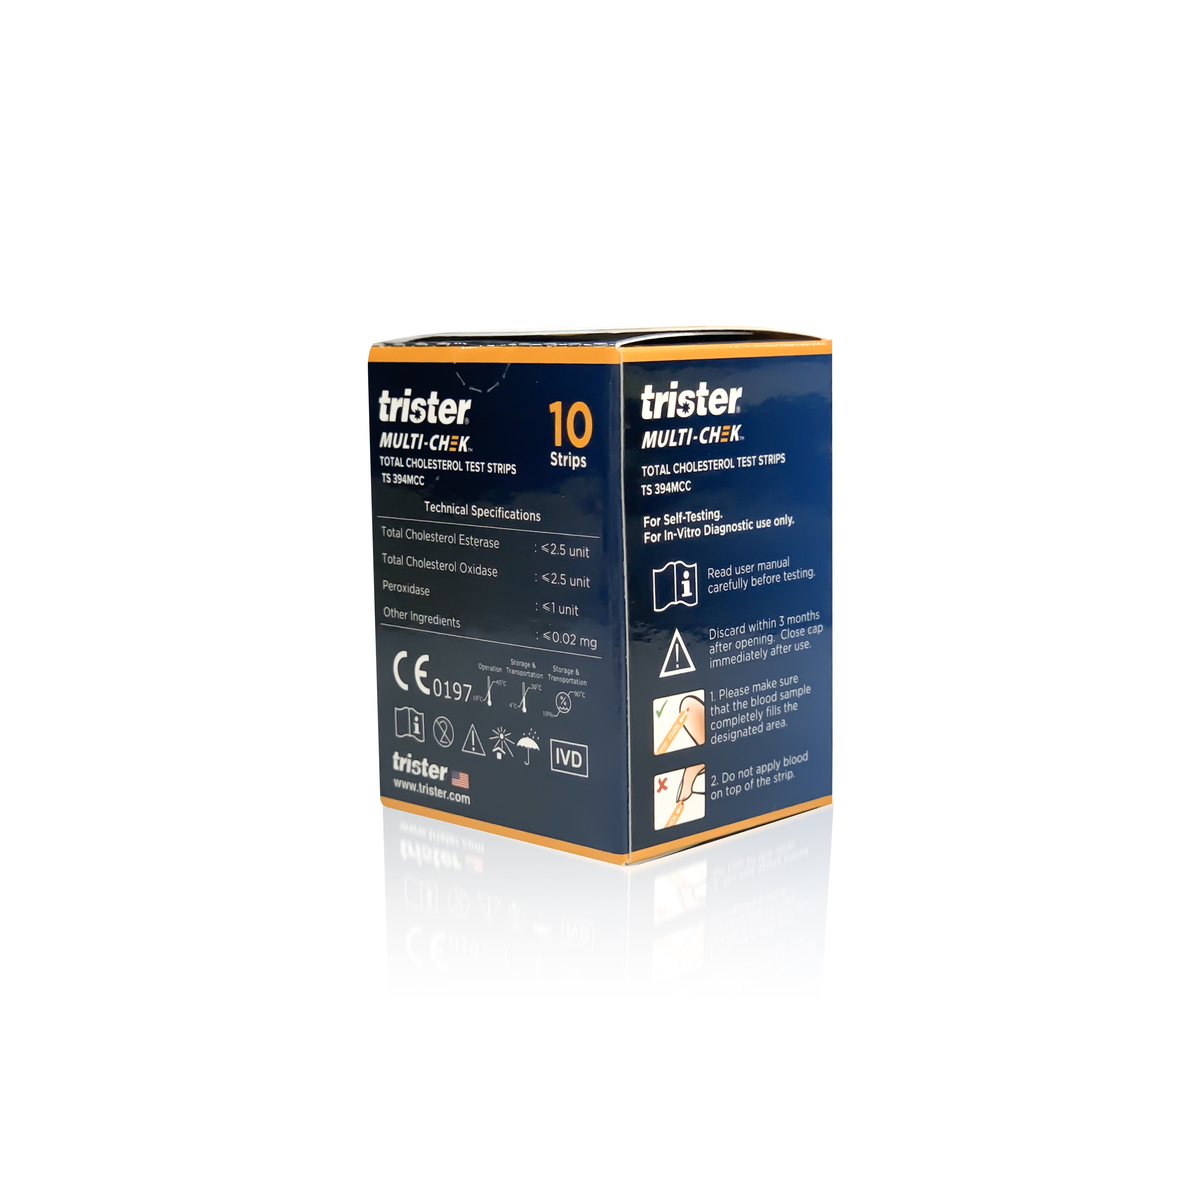 Trister Multi-Check Total Cholestrol Test Strip TS 394MCC 10 Strips